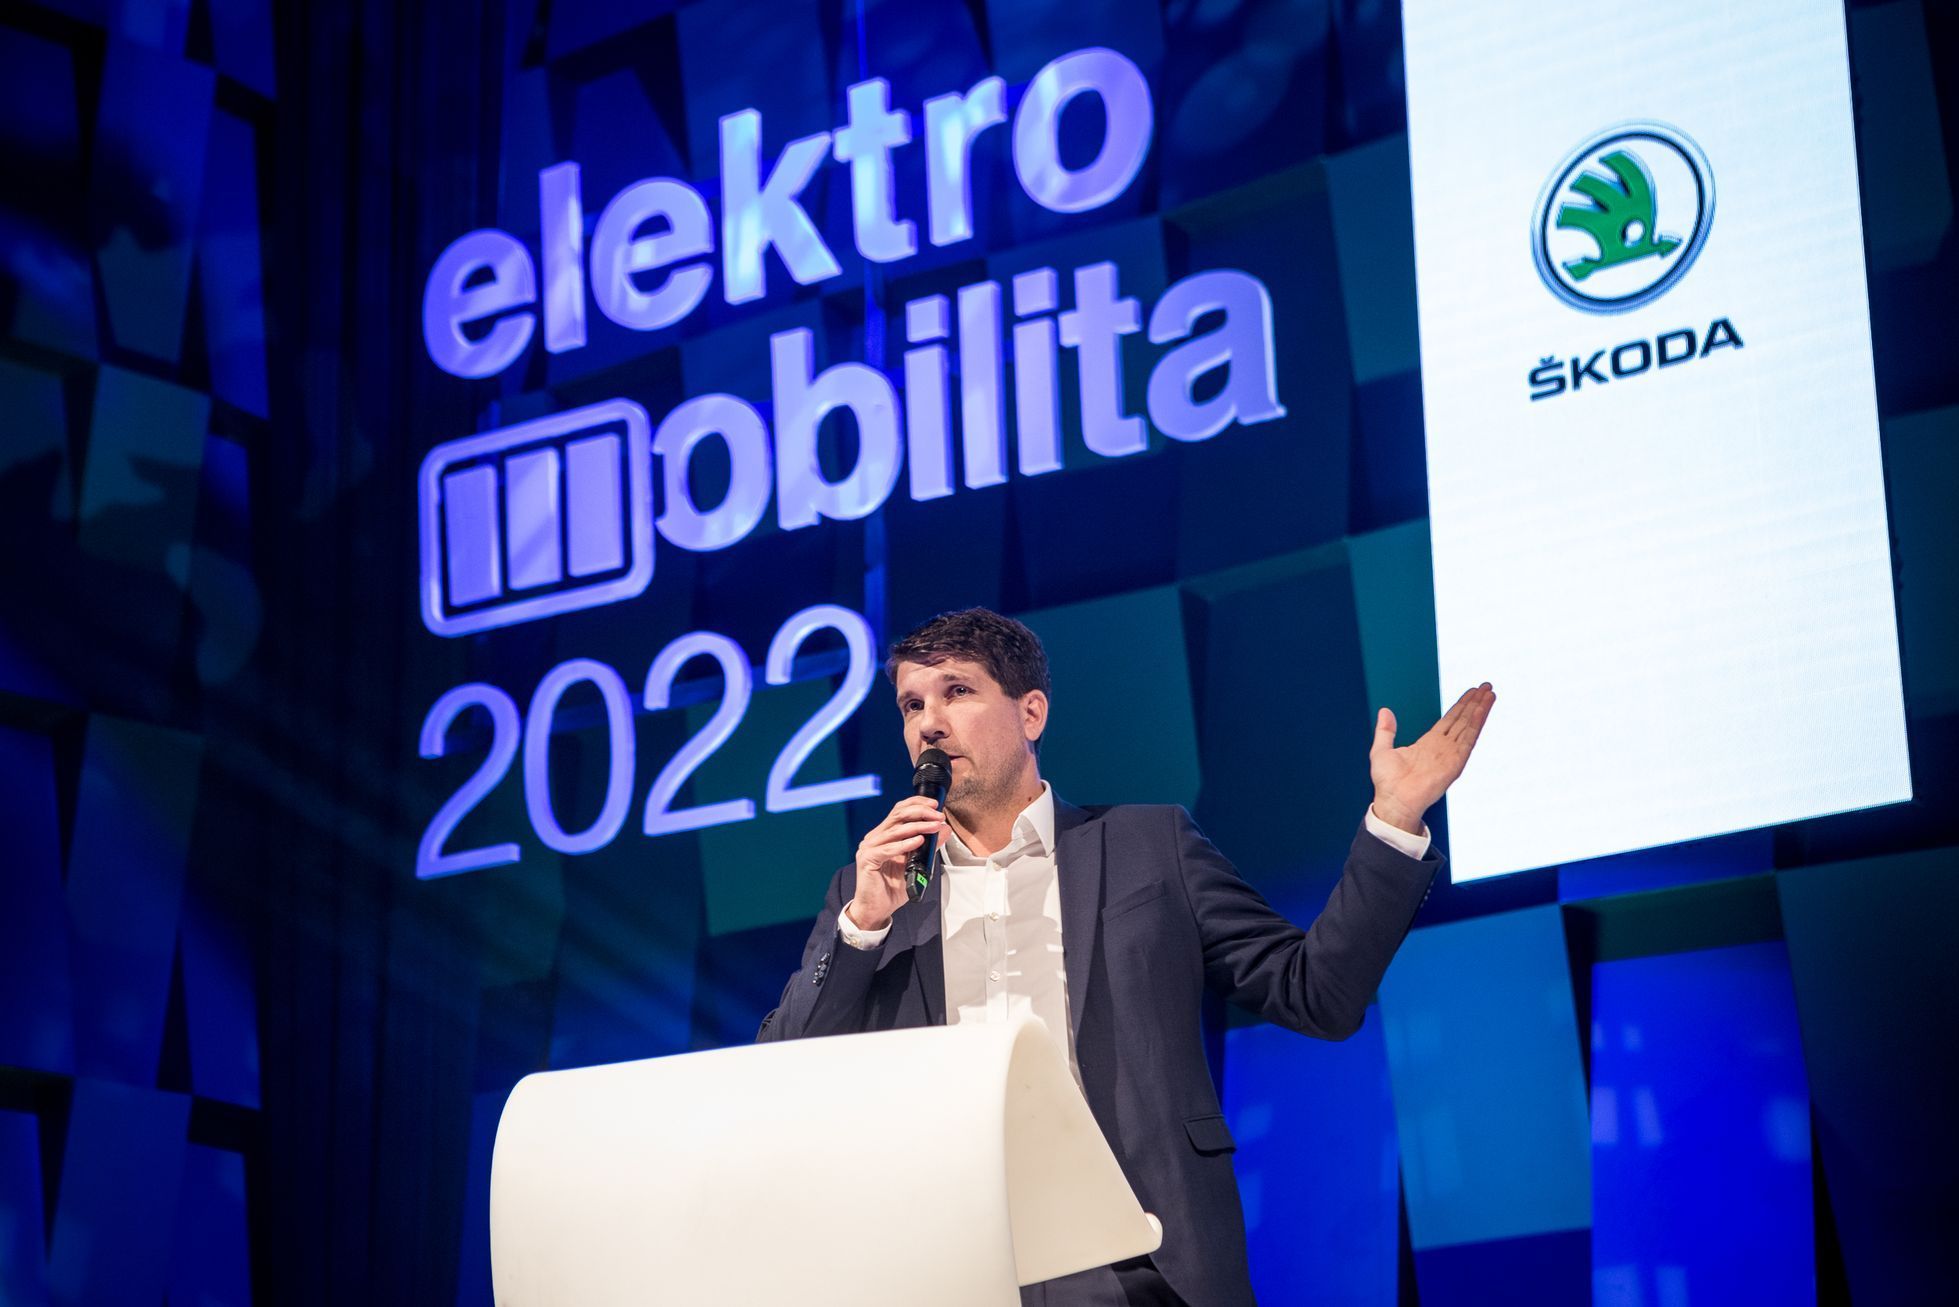 Forum elektromobilita 2022